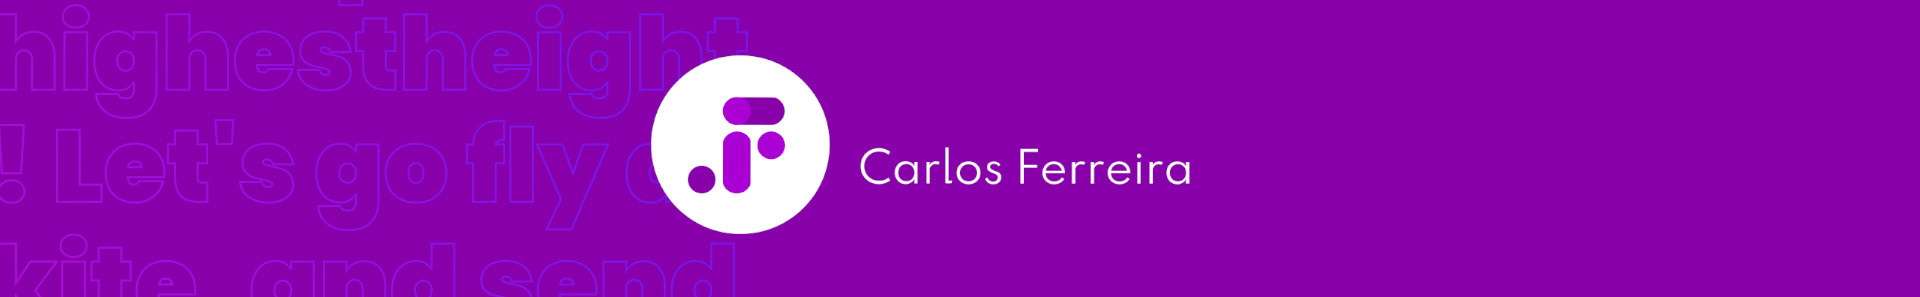 Carlos Ferreira's profile banner